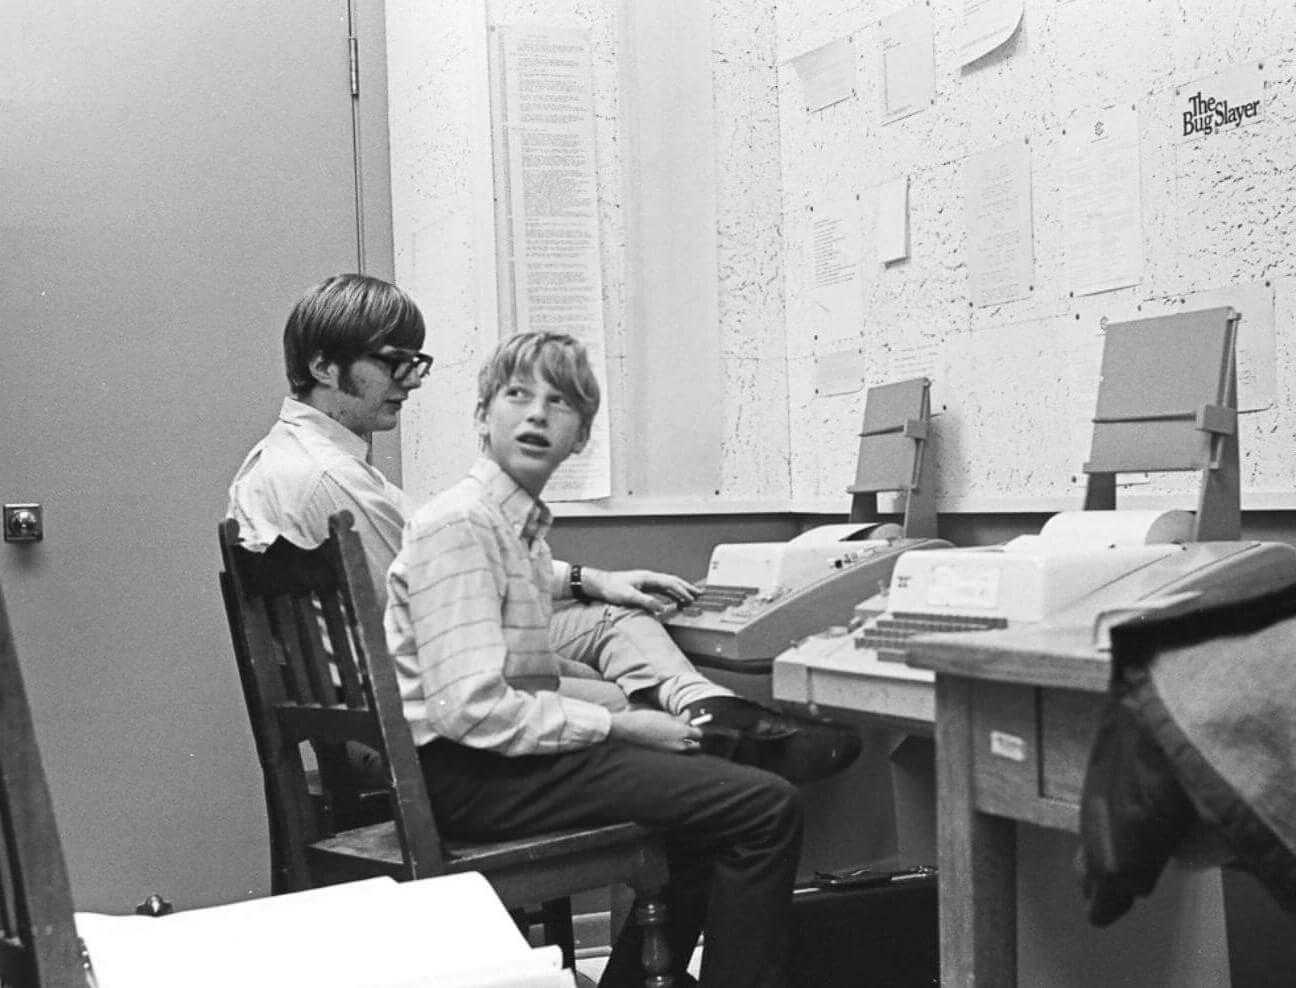 Bill Gates e Paul Allen a scrivere i loro primi programmi software